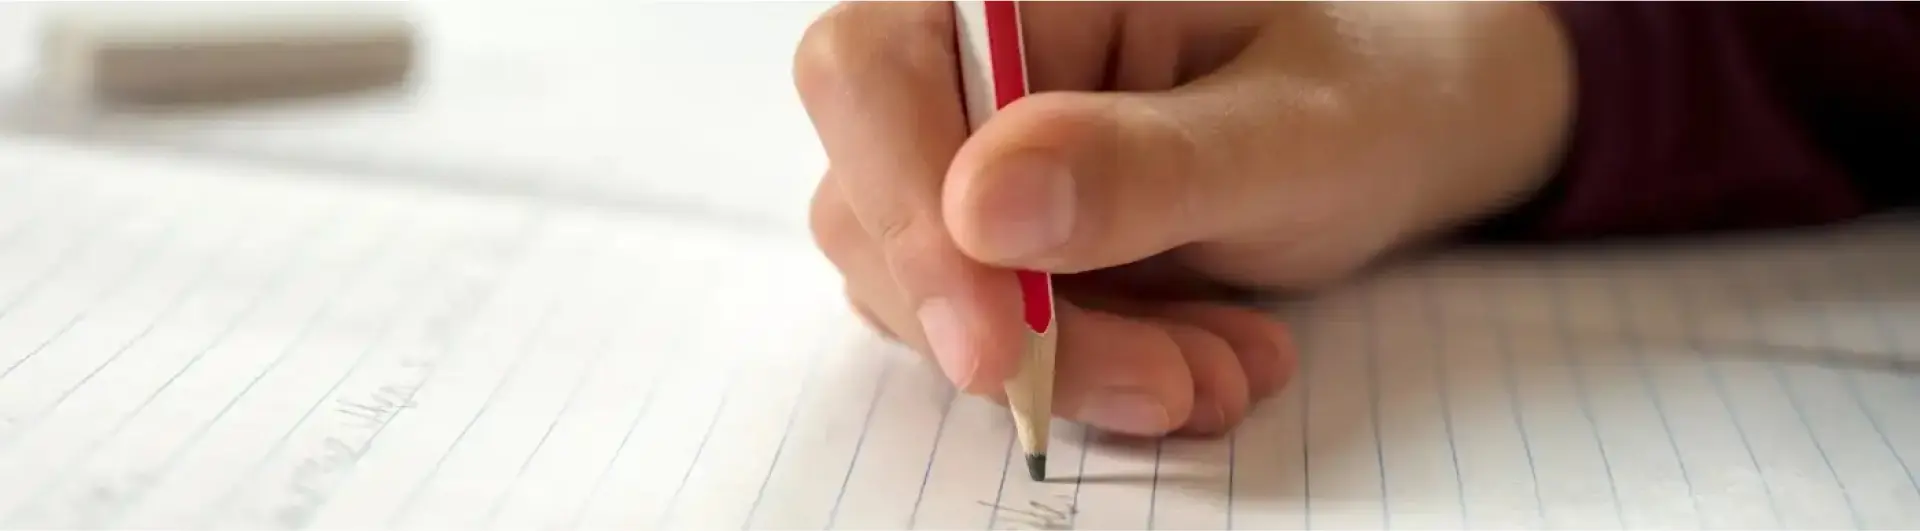 Una mano scrive con la matita su un foglio